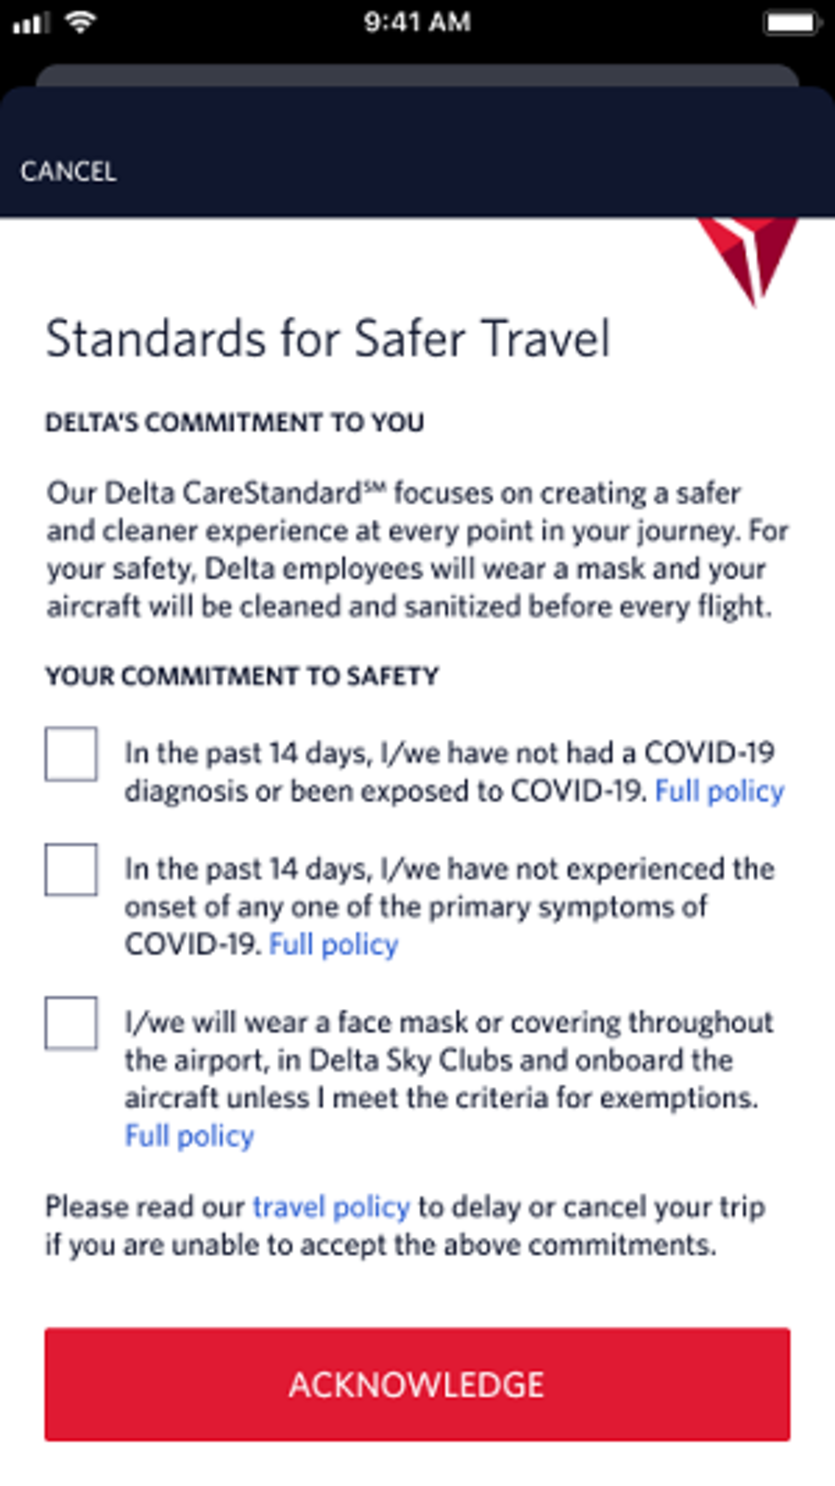 Fly Delta app - standards for safer travel